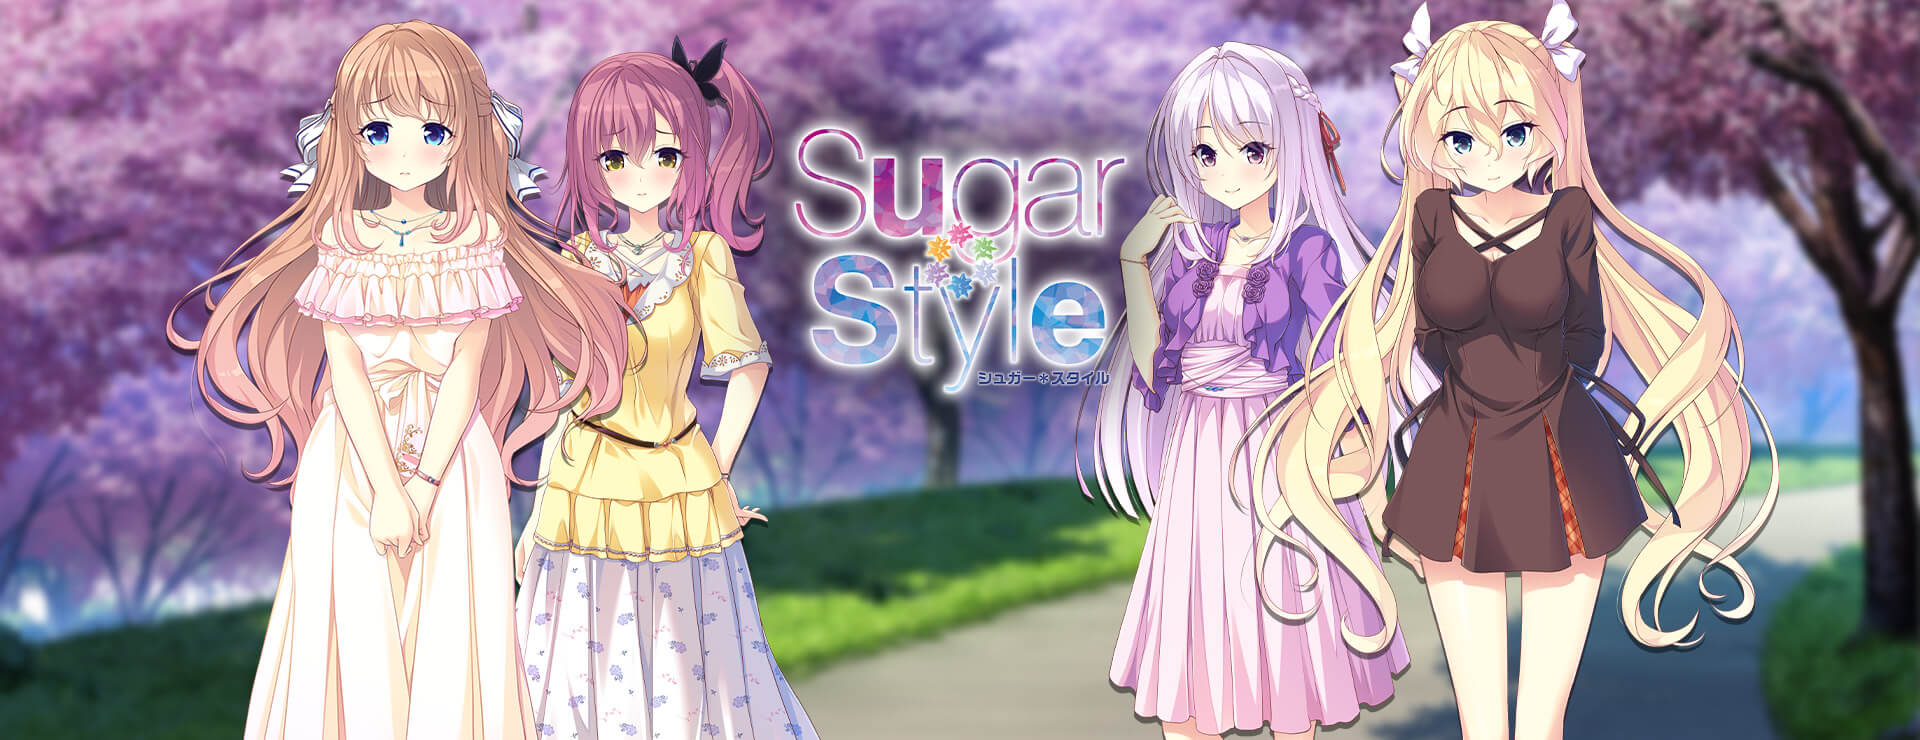 Sugar * Style - Zwanglos  Spiel